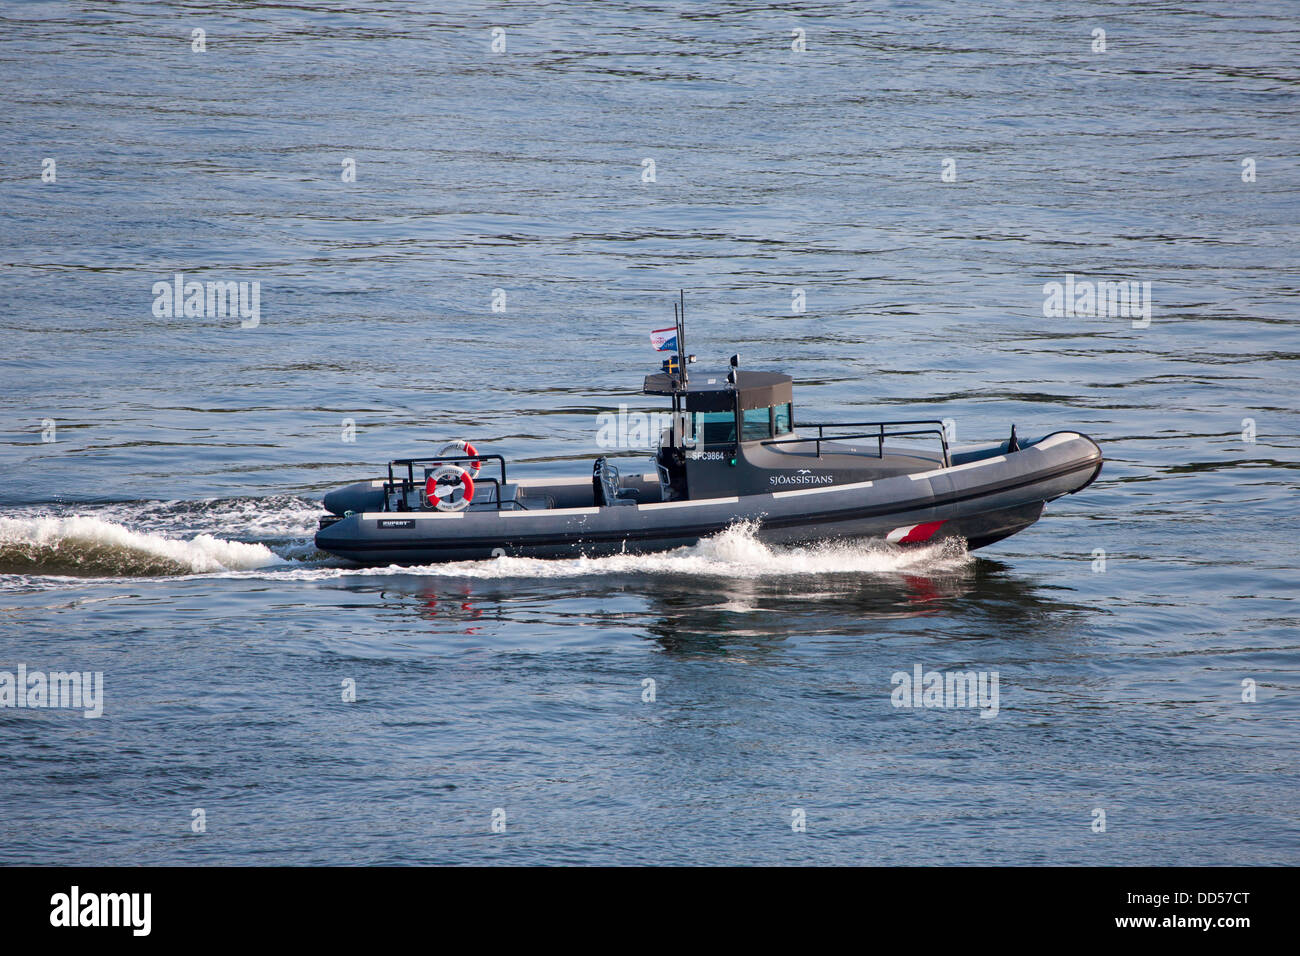 Sjoassistans en caoutchouc gonflable bateau de vitesse à Stockholm en Suède Banque D'Images